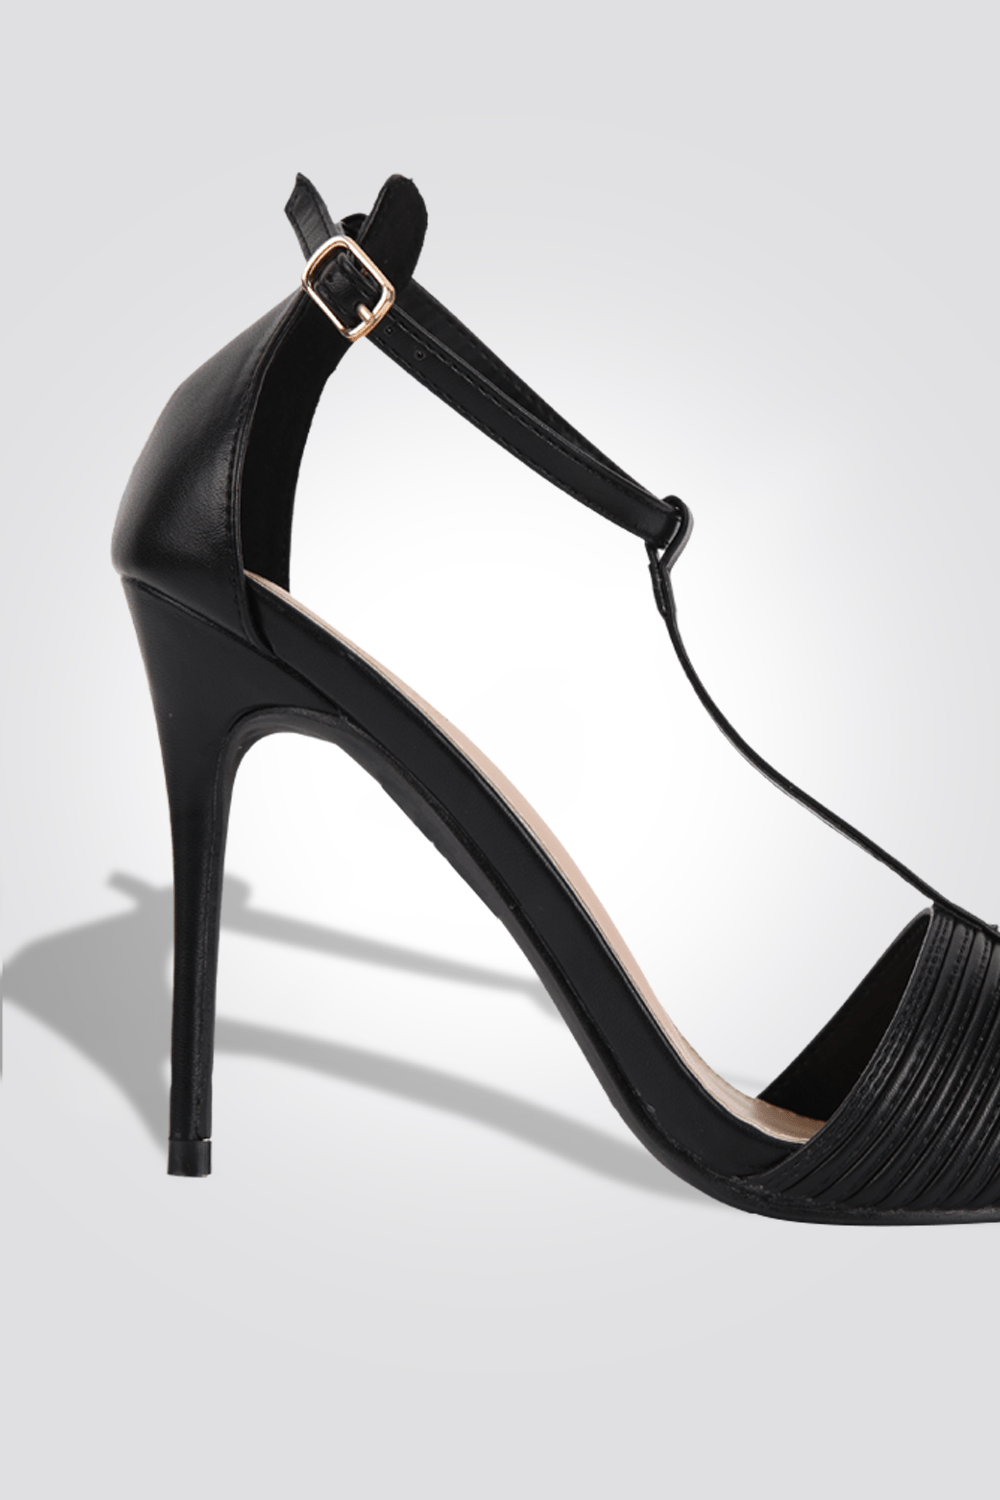 KENNETH COLE - נעלי עקב מפוספס 10 ס"מ בצבע שחור - MASHBIR//365